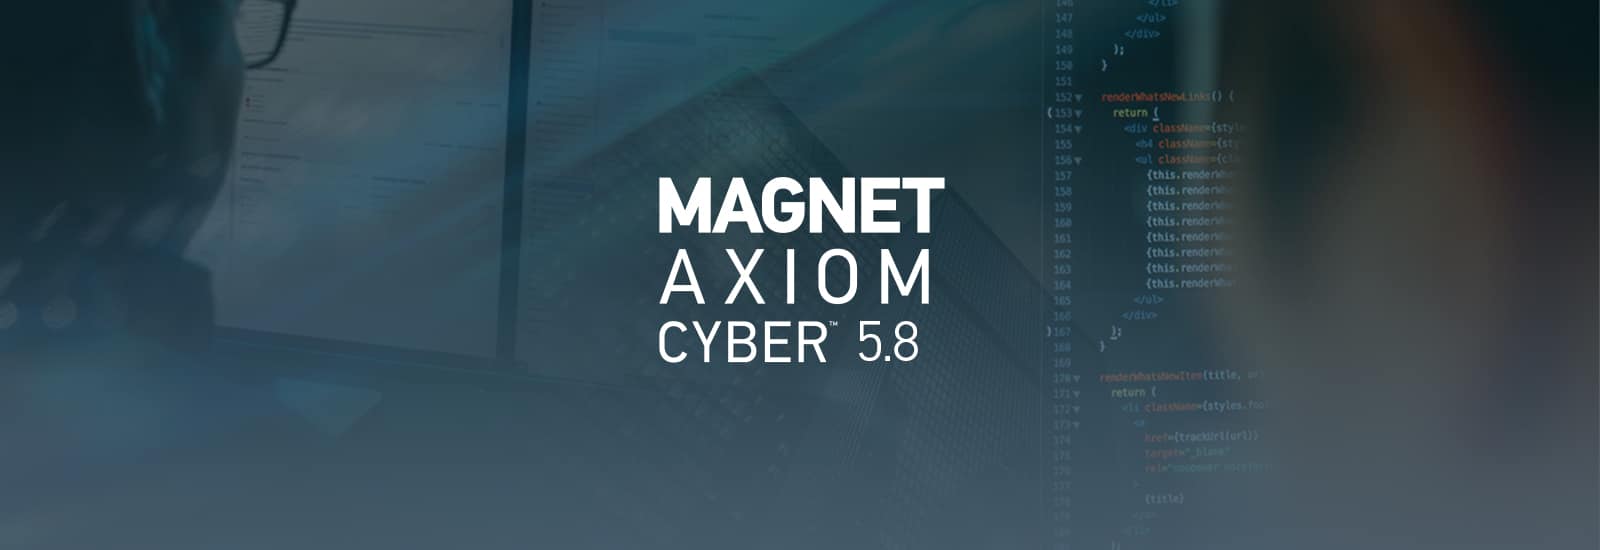 Magnet AXIOM Cyber 5.8